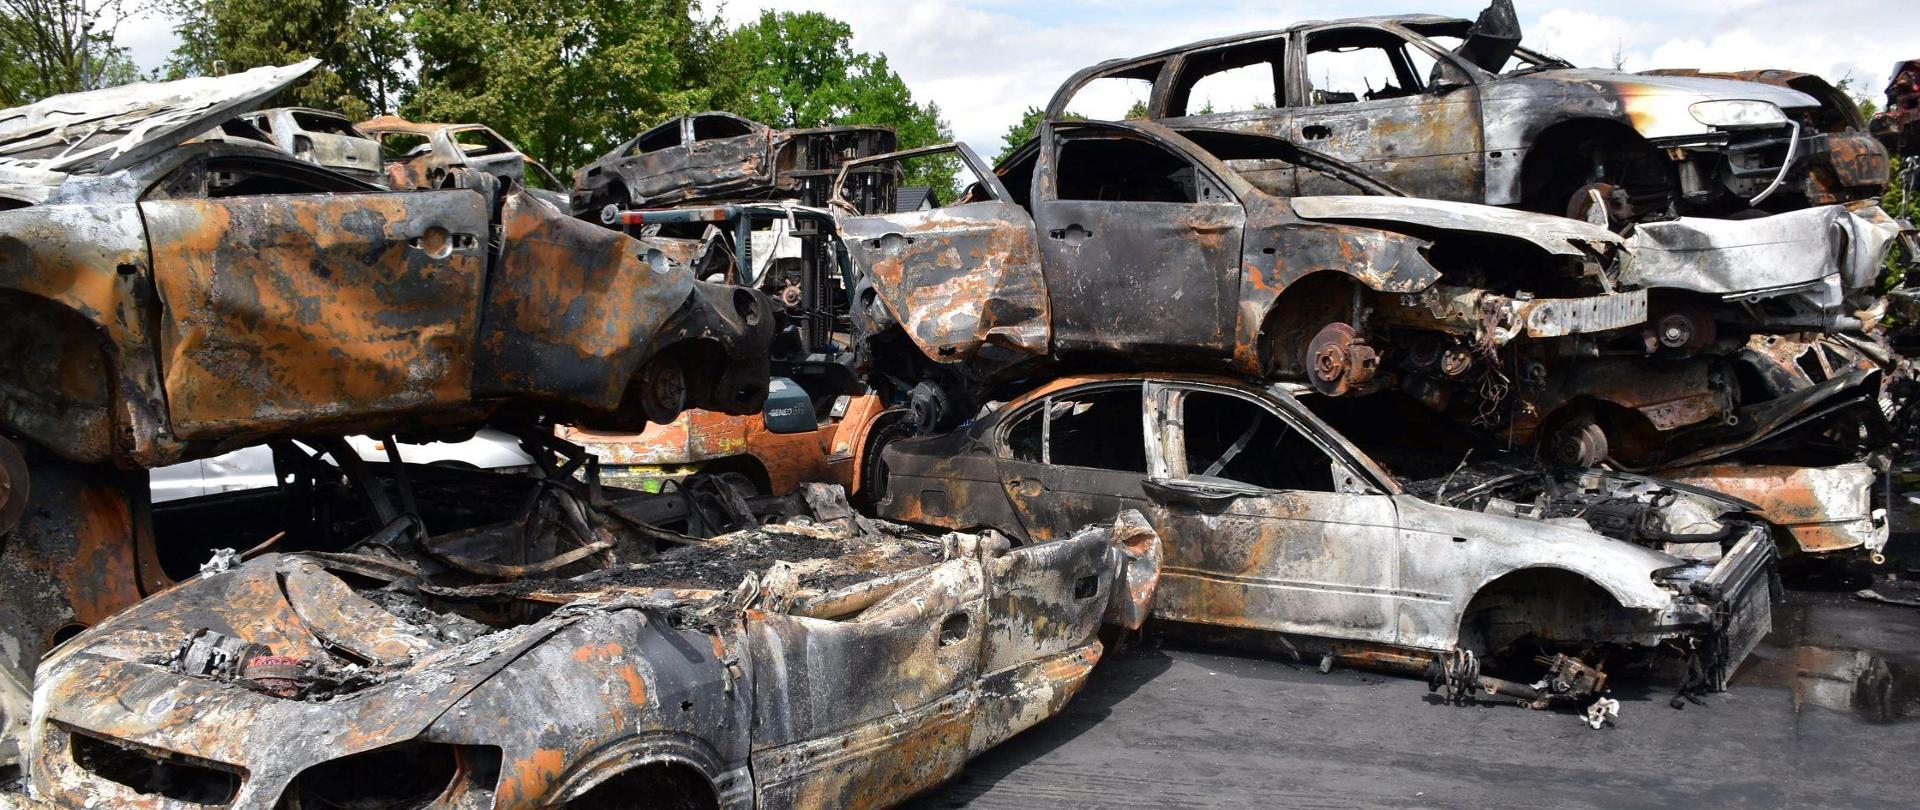 Spalone pojazdy ustawione jeden na drugim w kilku rzędach